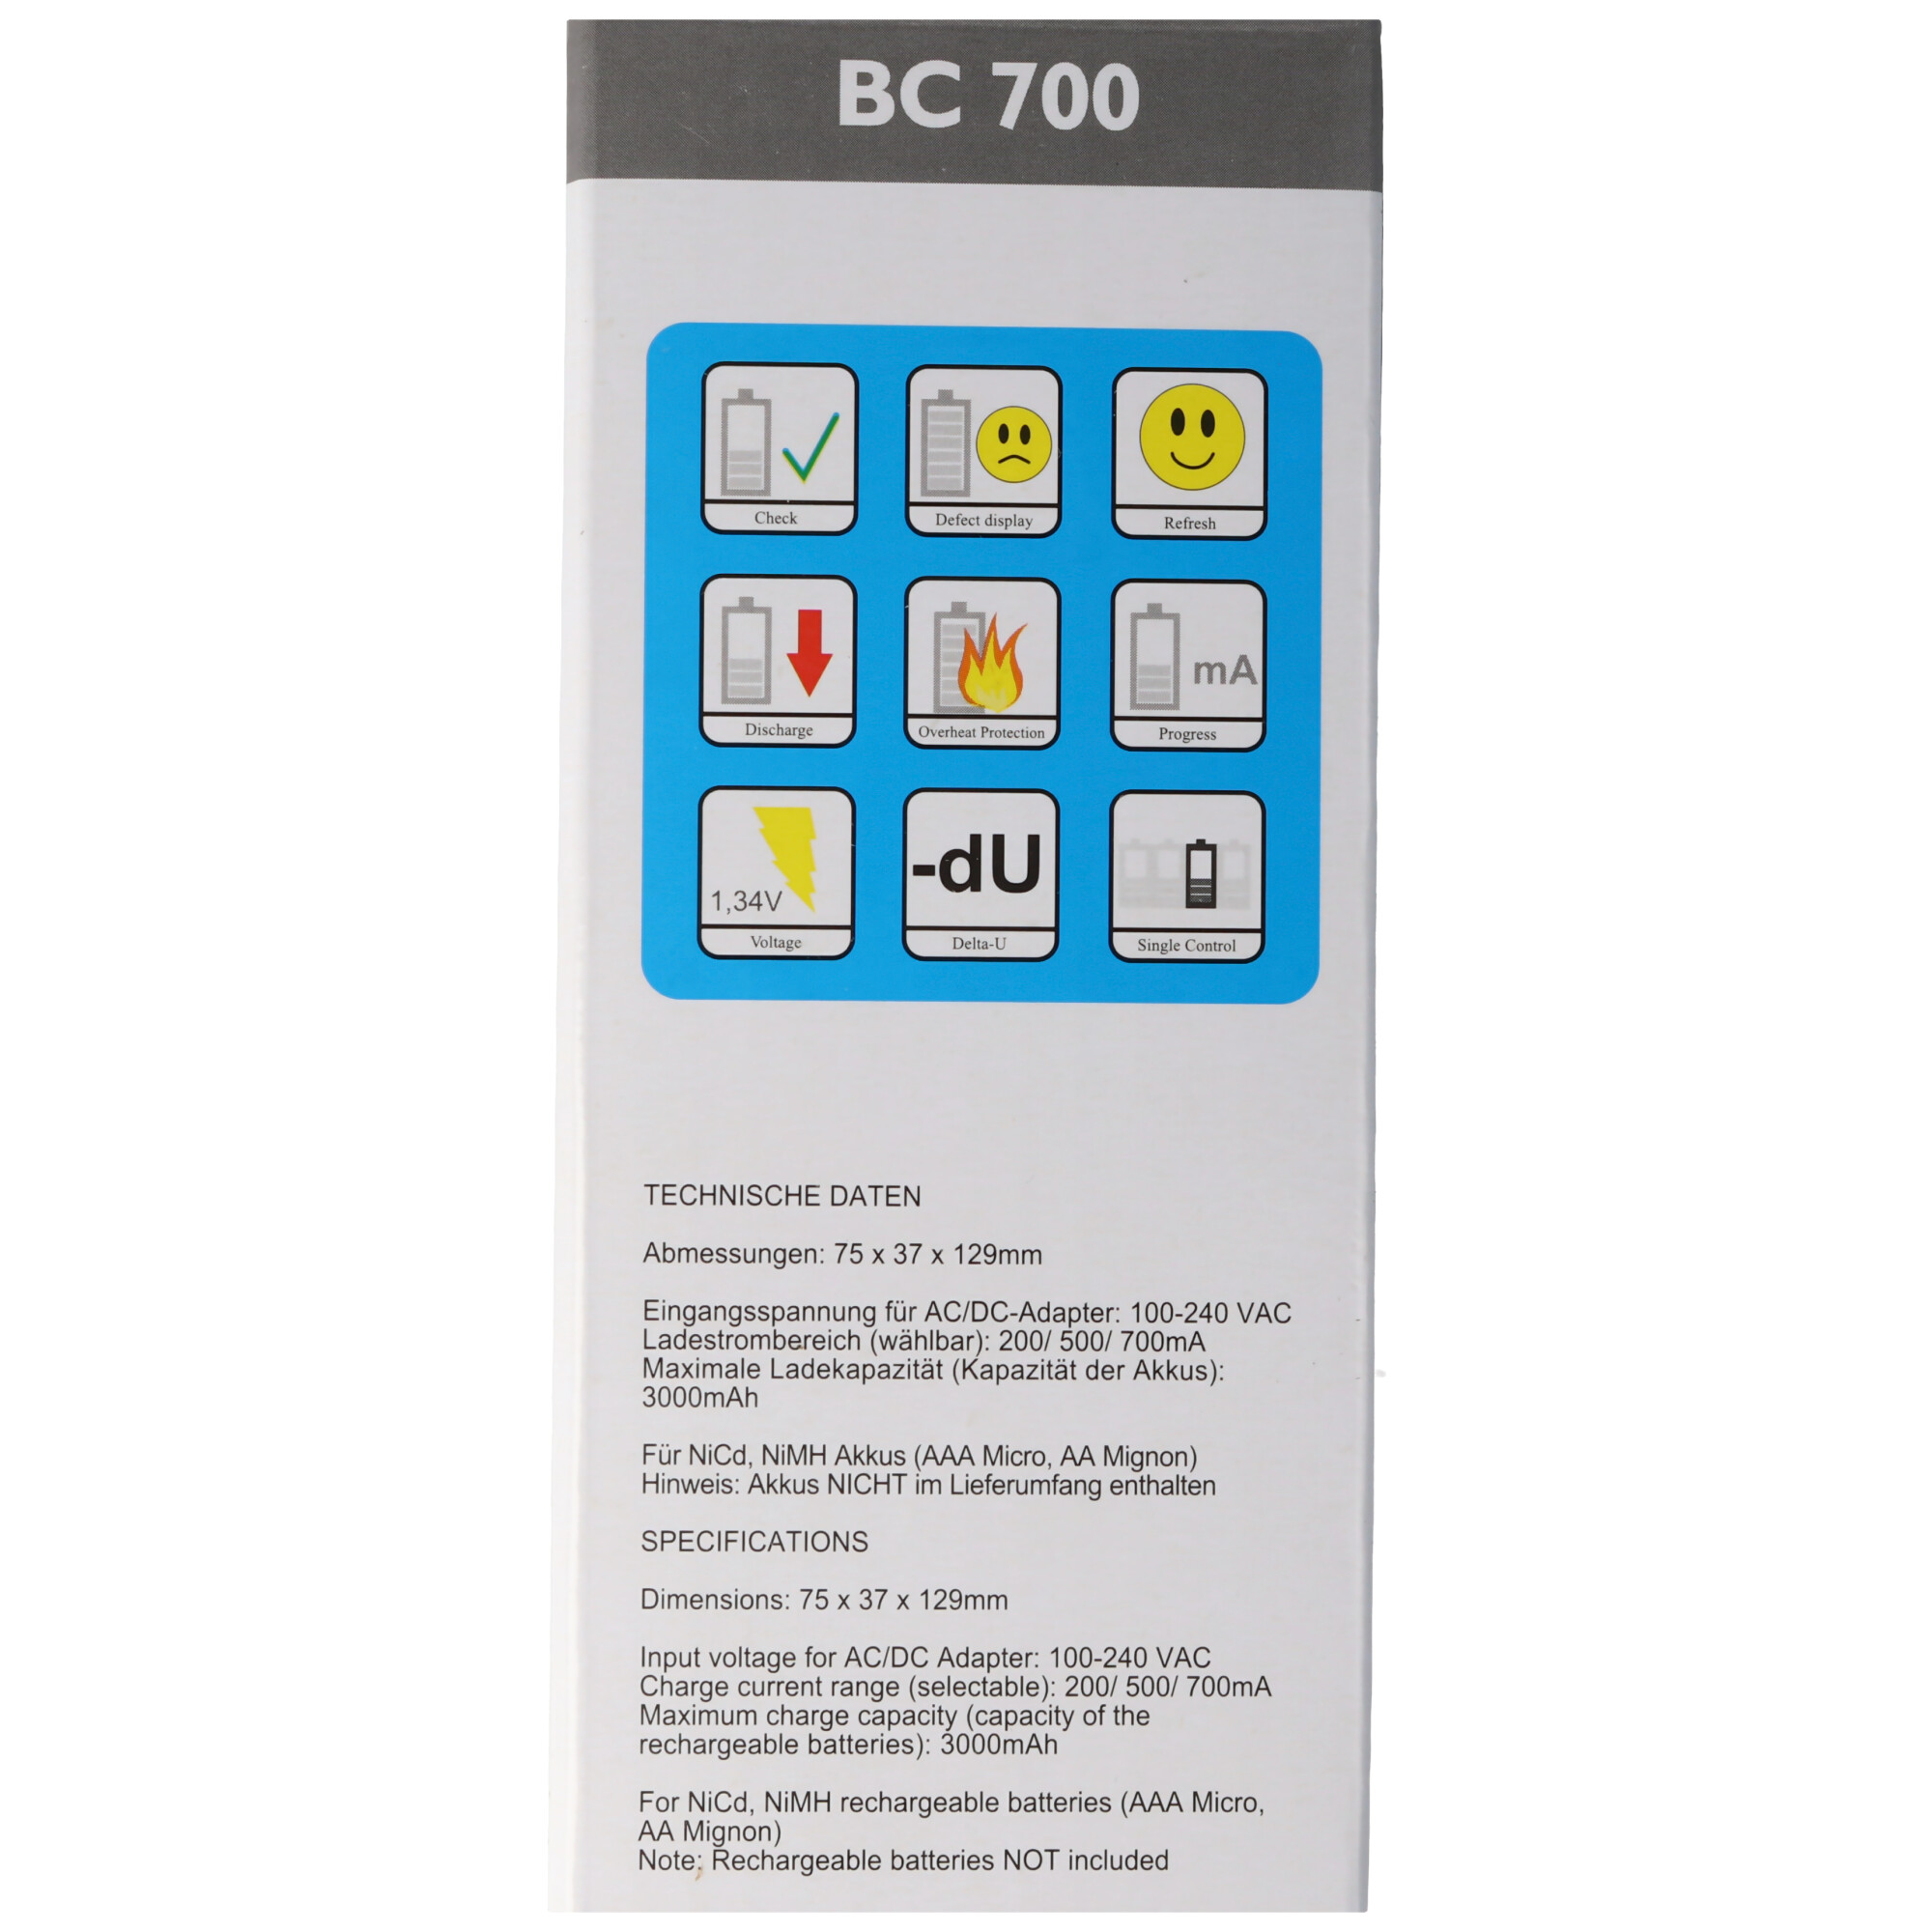 BC-700 Schnell-Ladegerät mit LCD-Display und Entladefunktion